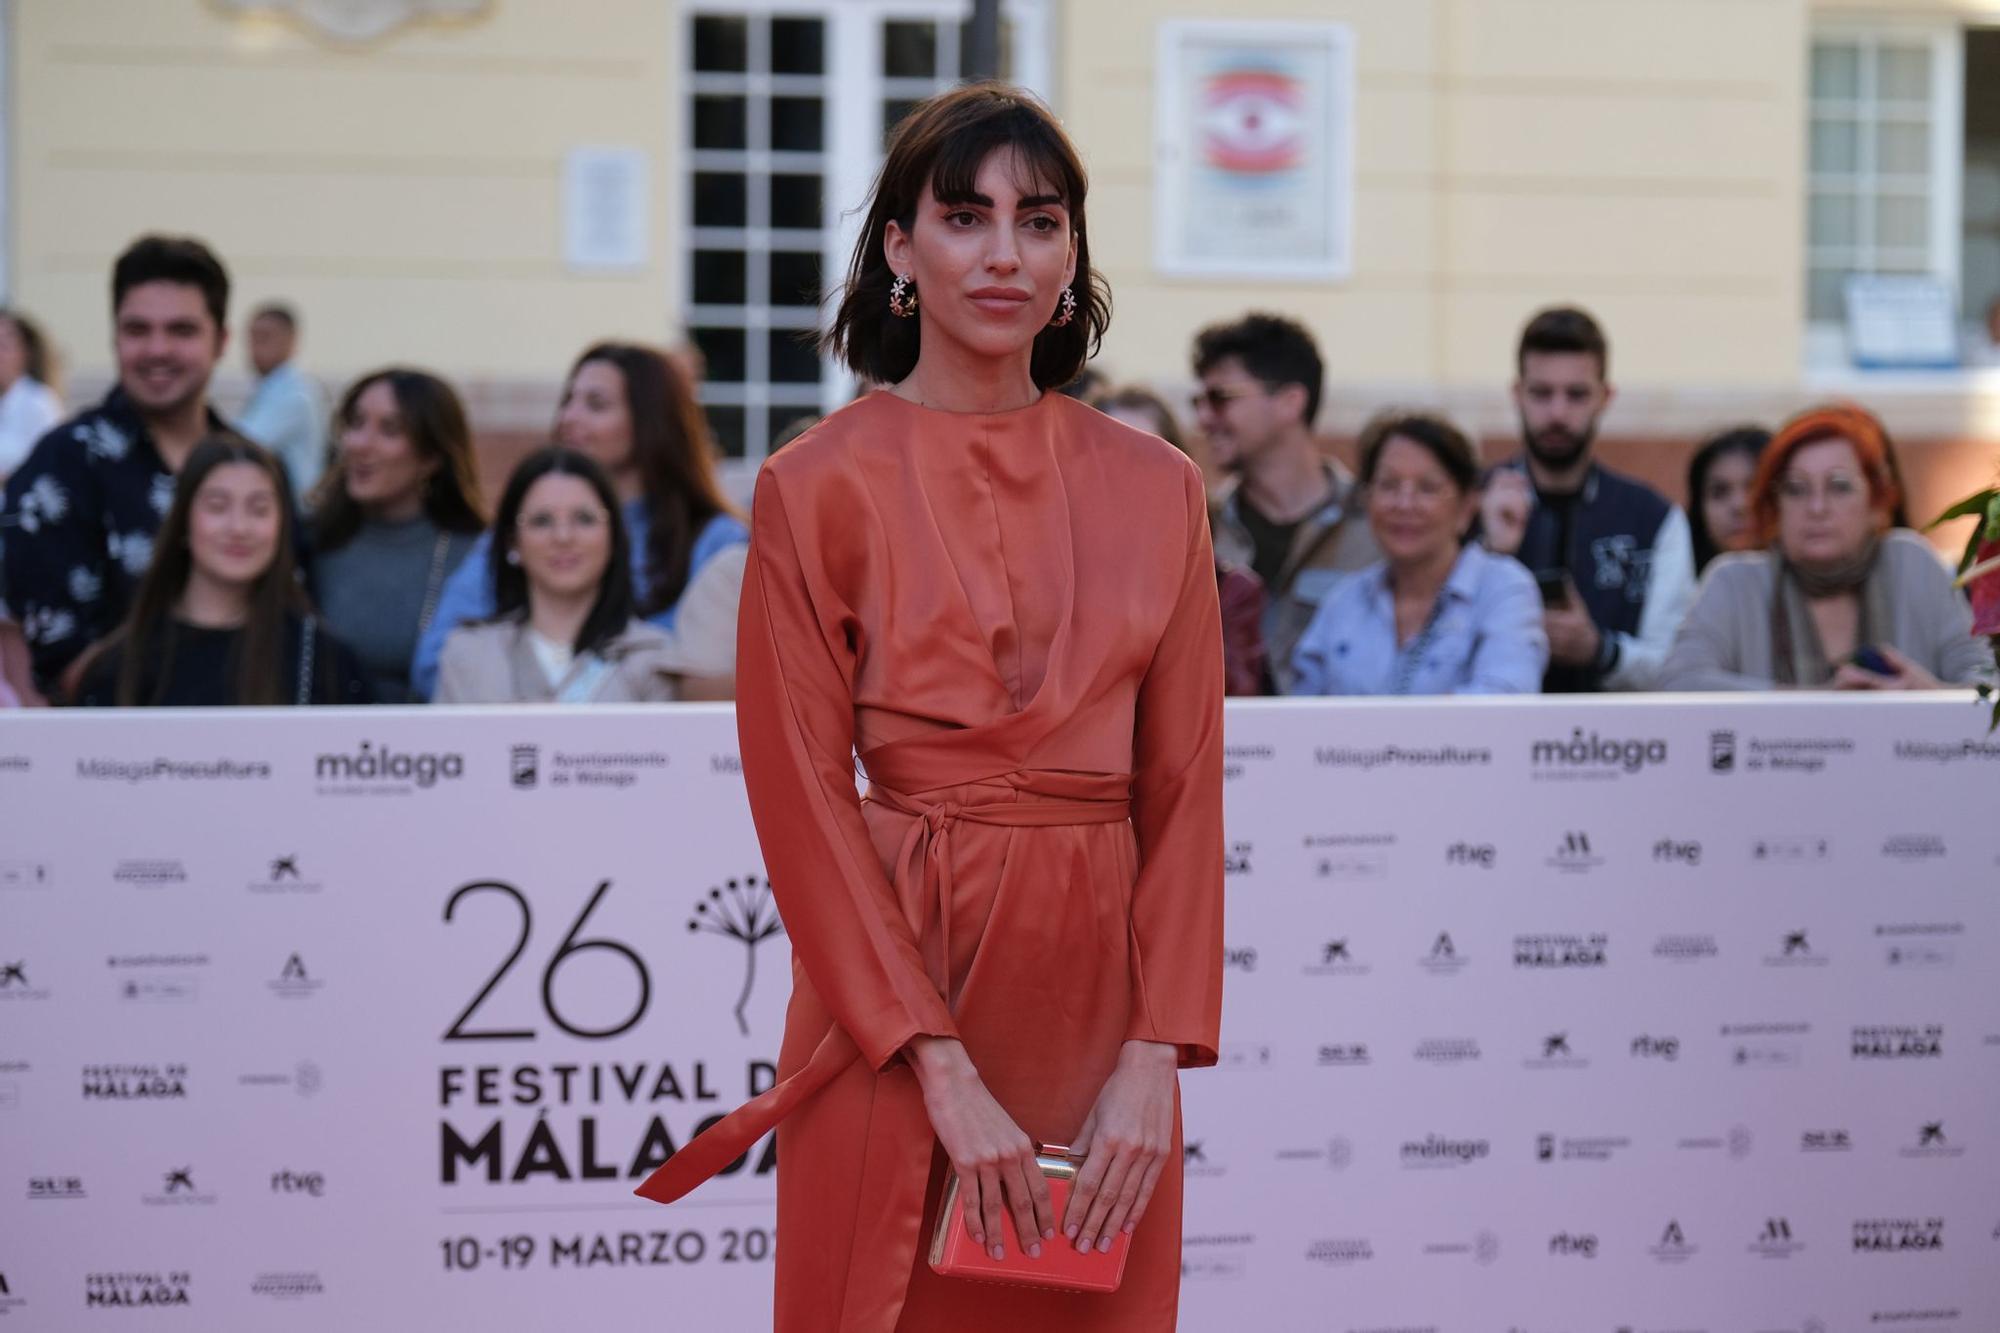 Las imágenes de la alfombra roja de la gala inaugural del 26 Festival de Málaga